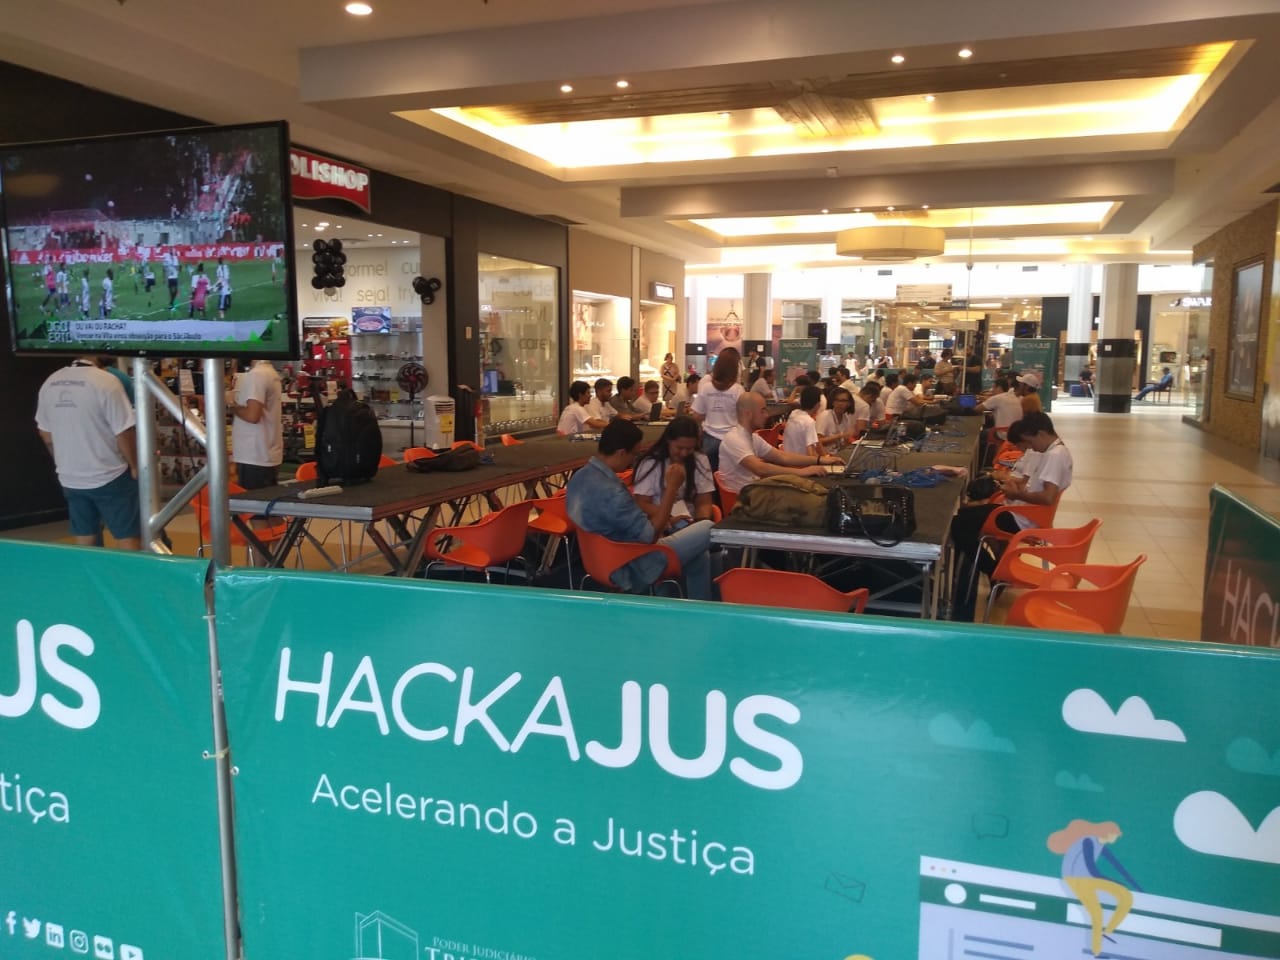 TECNOLOGIA: Hackathon do Judiciário começa nesta sexta no Porto Velho Shopping